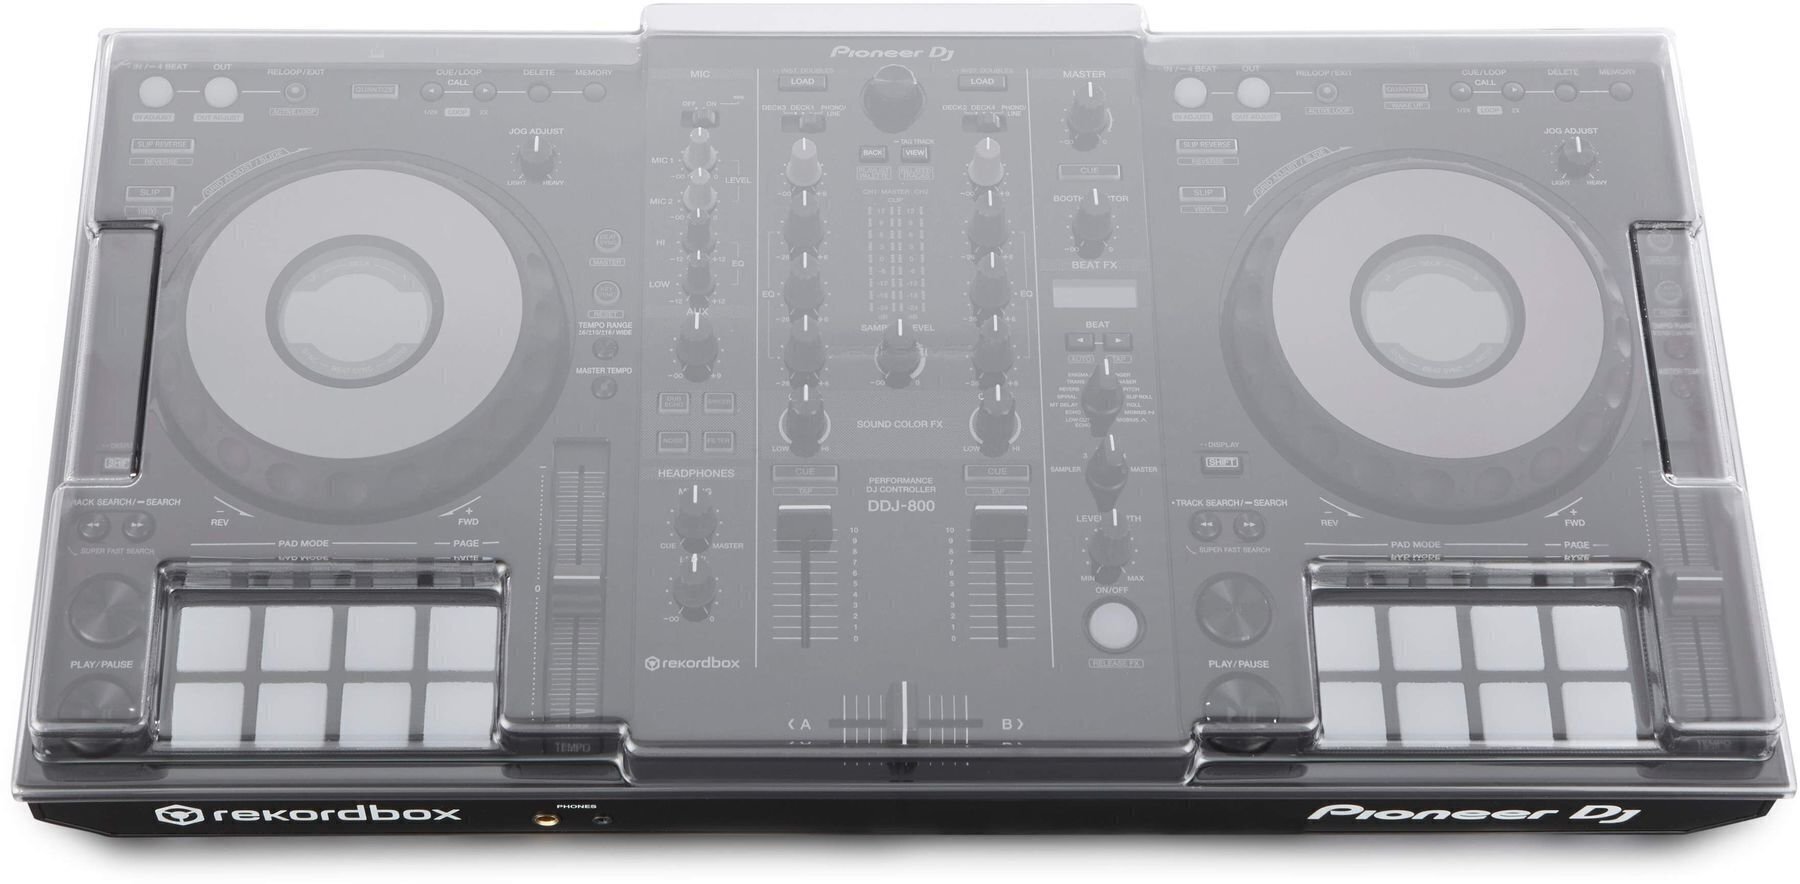 Contrôleur DJ Pioneer Dj DDJ-800 Cover SET Contrôleur DJ